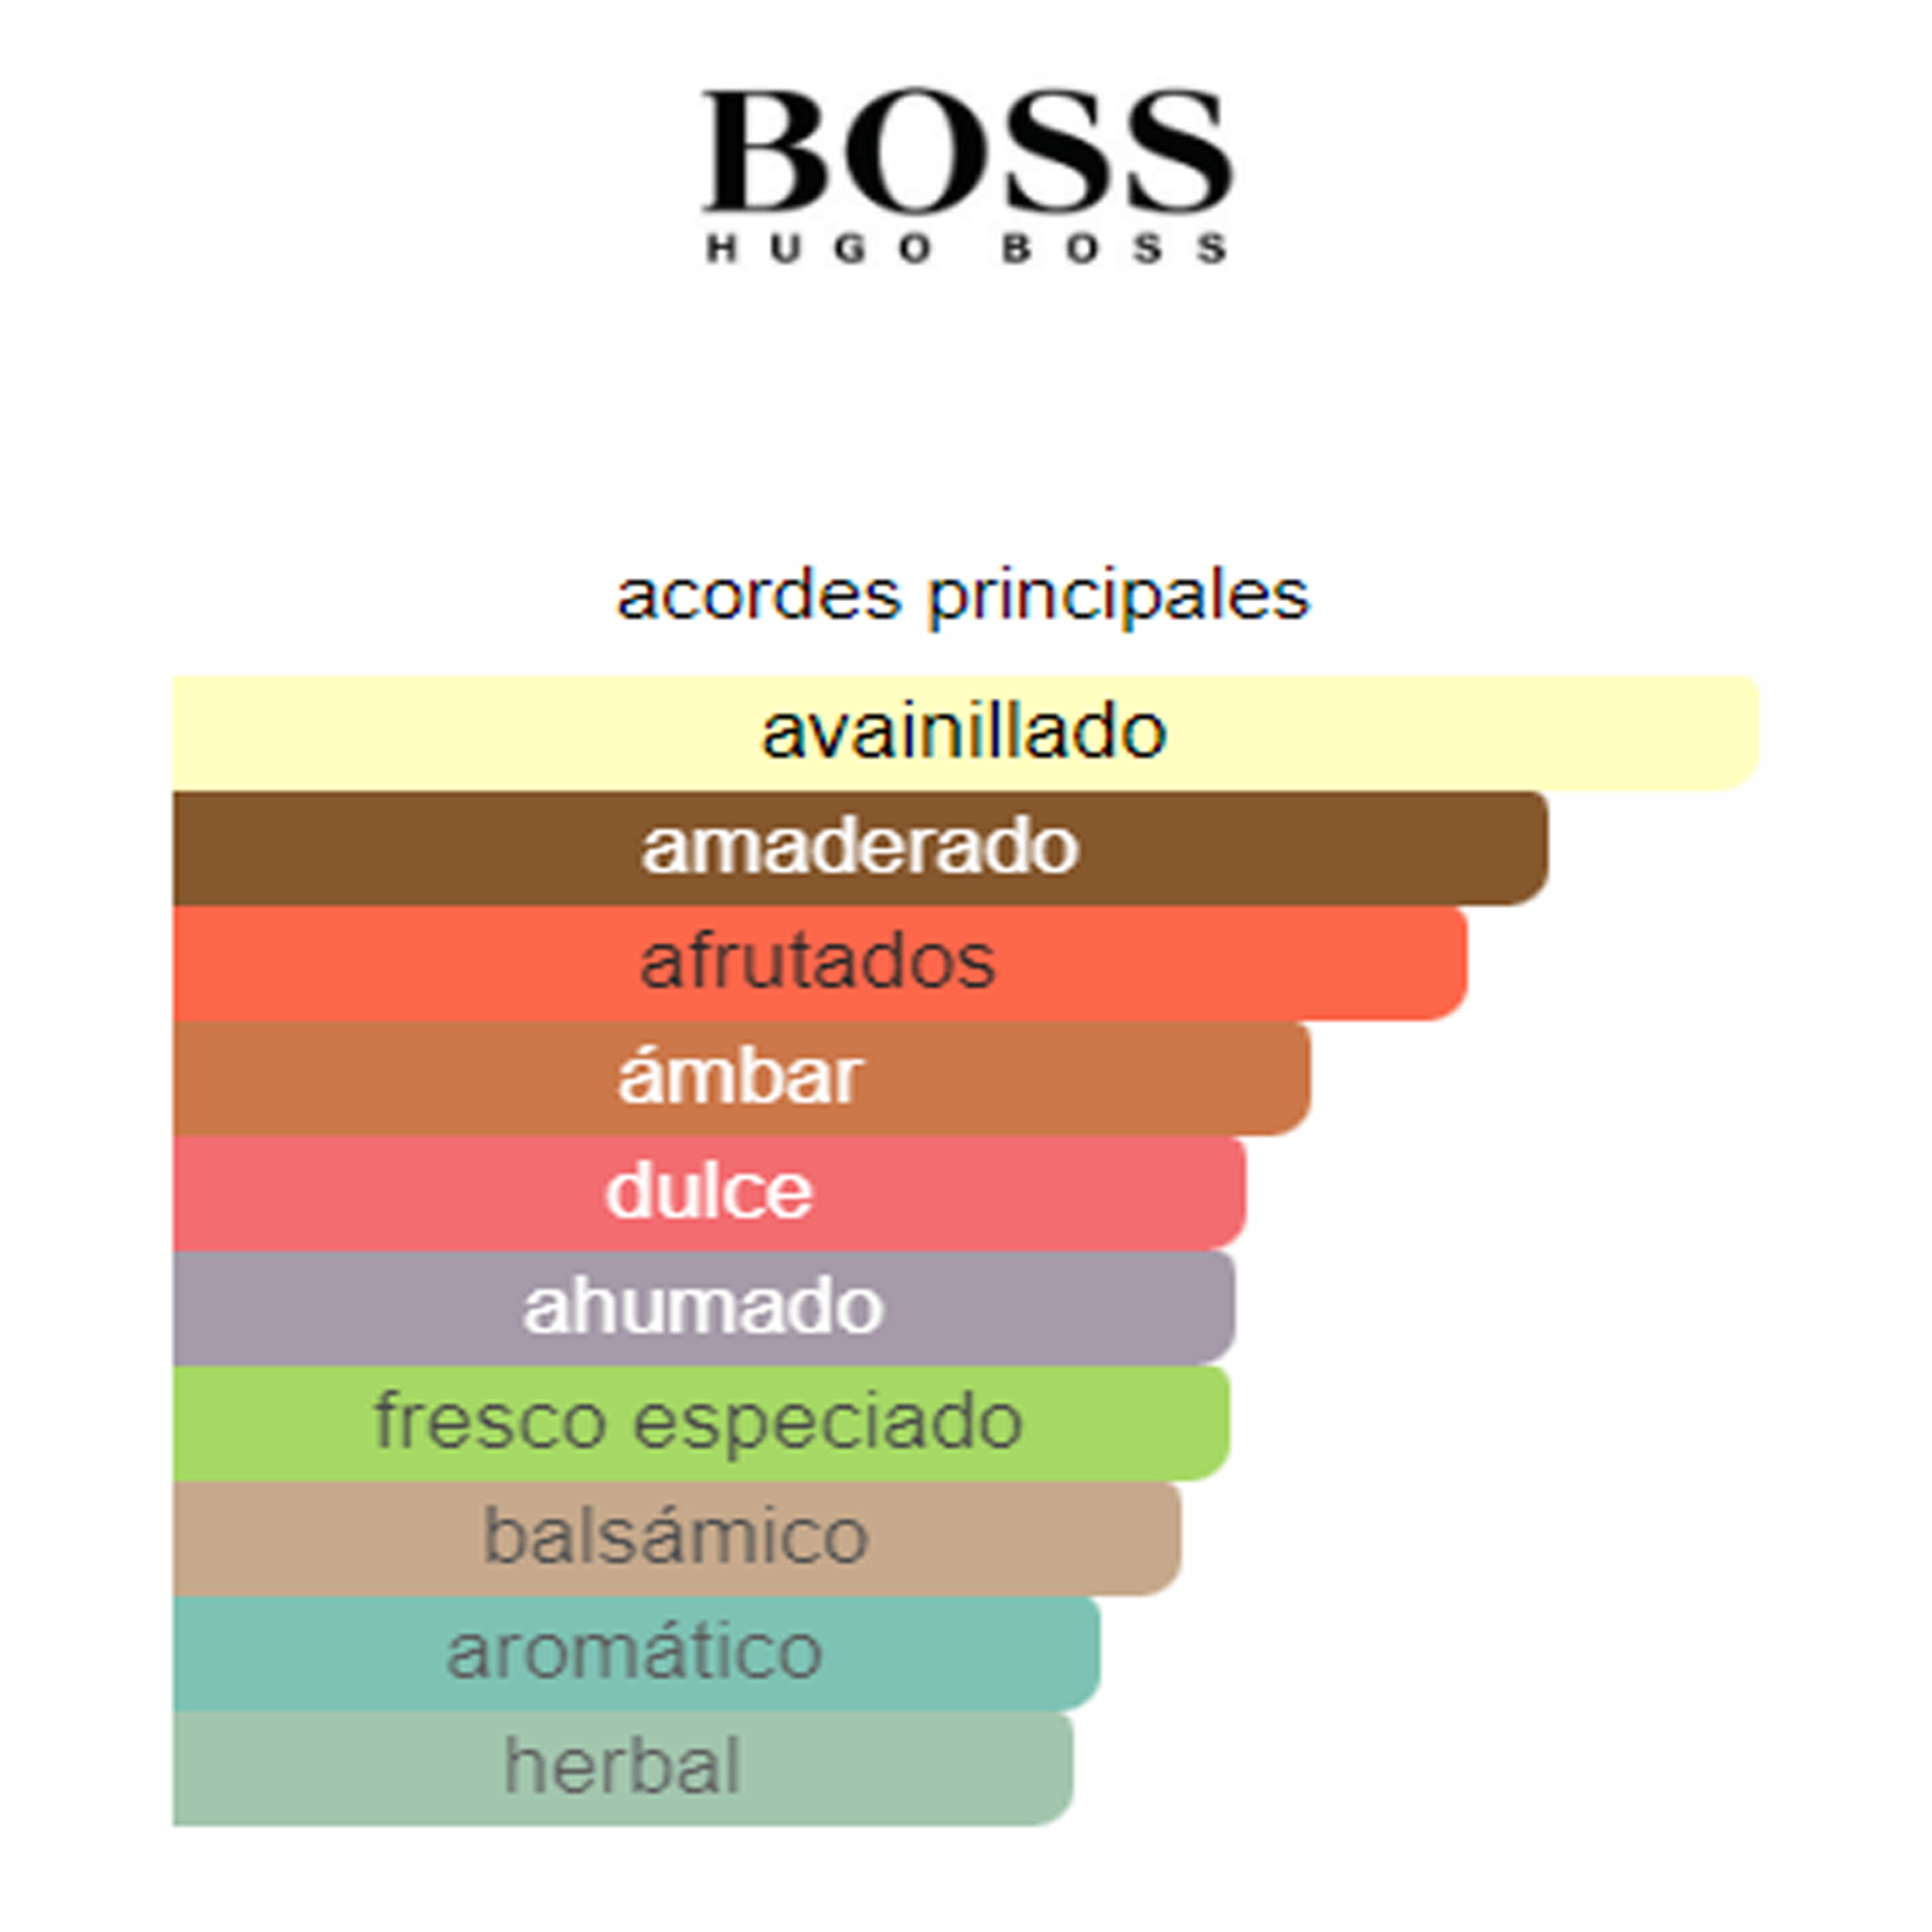 Boss Orange for Men Hugo Boss (Perfume Replica Con Fragancia Importada)- Hombre